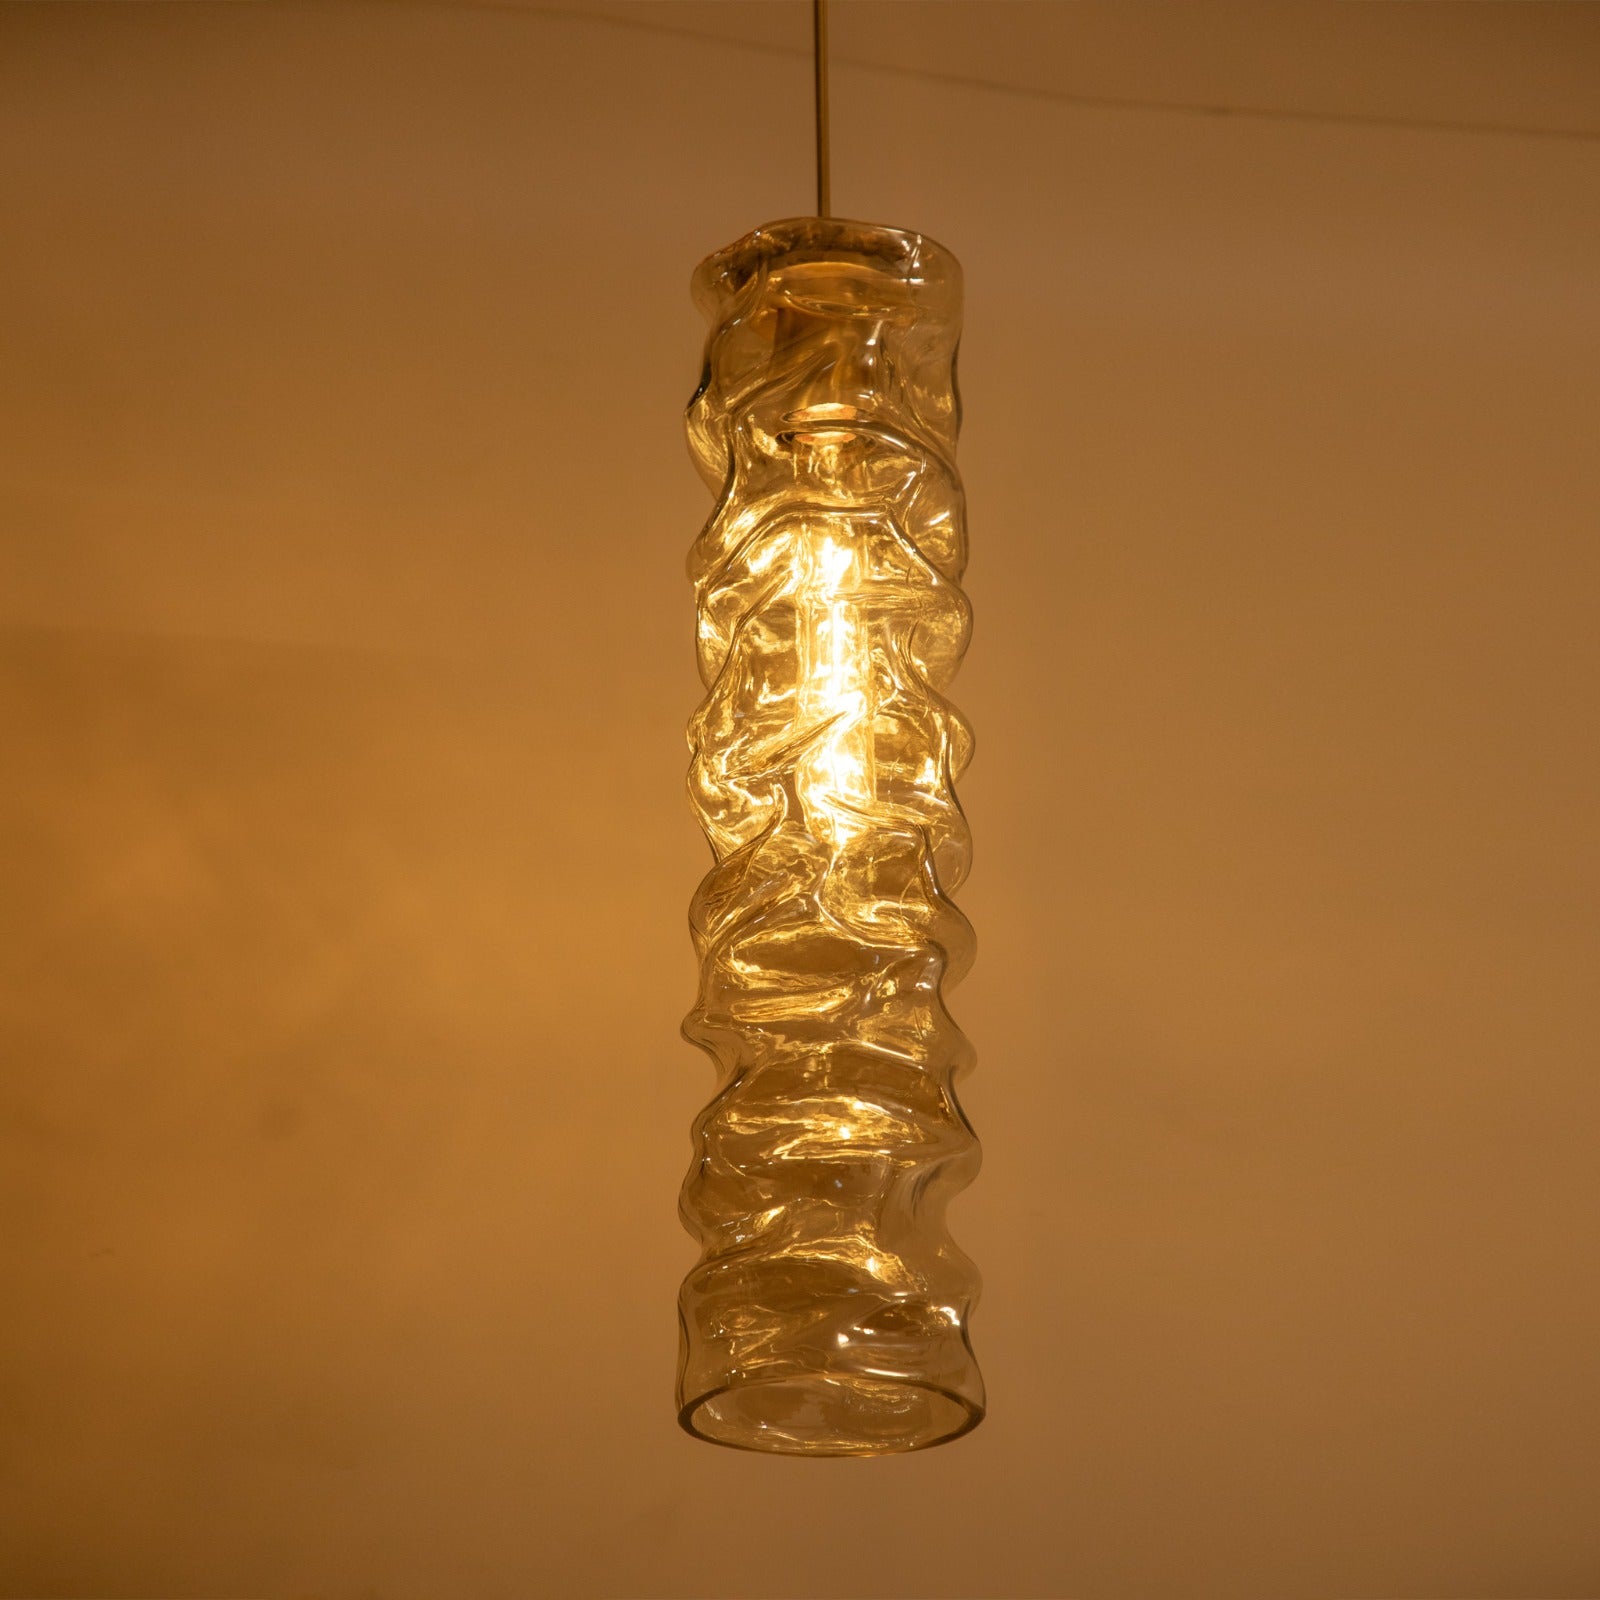 Artistic Sleek Amber Pendant Light online